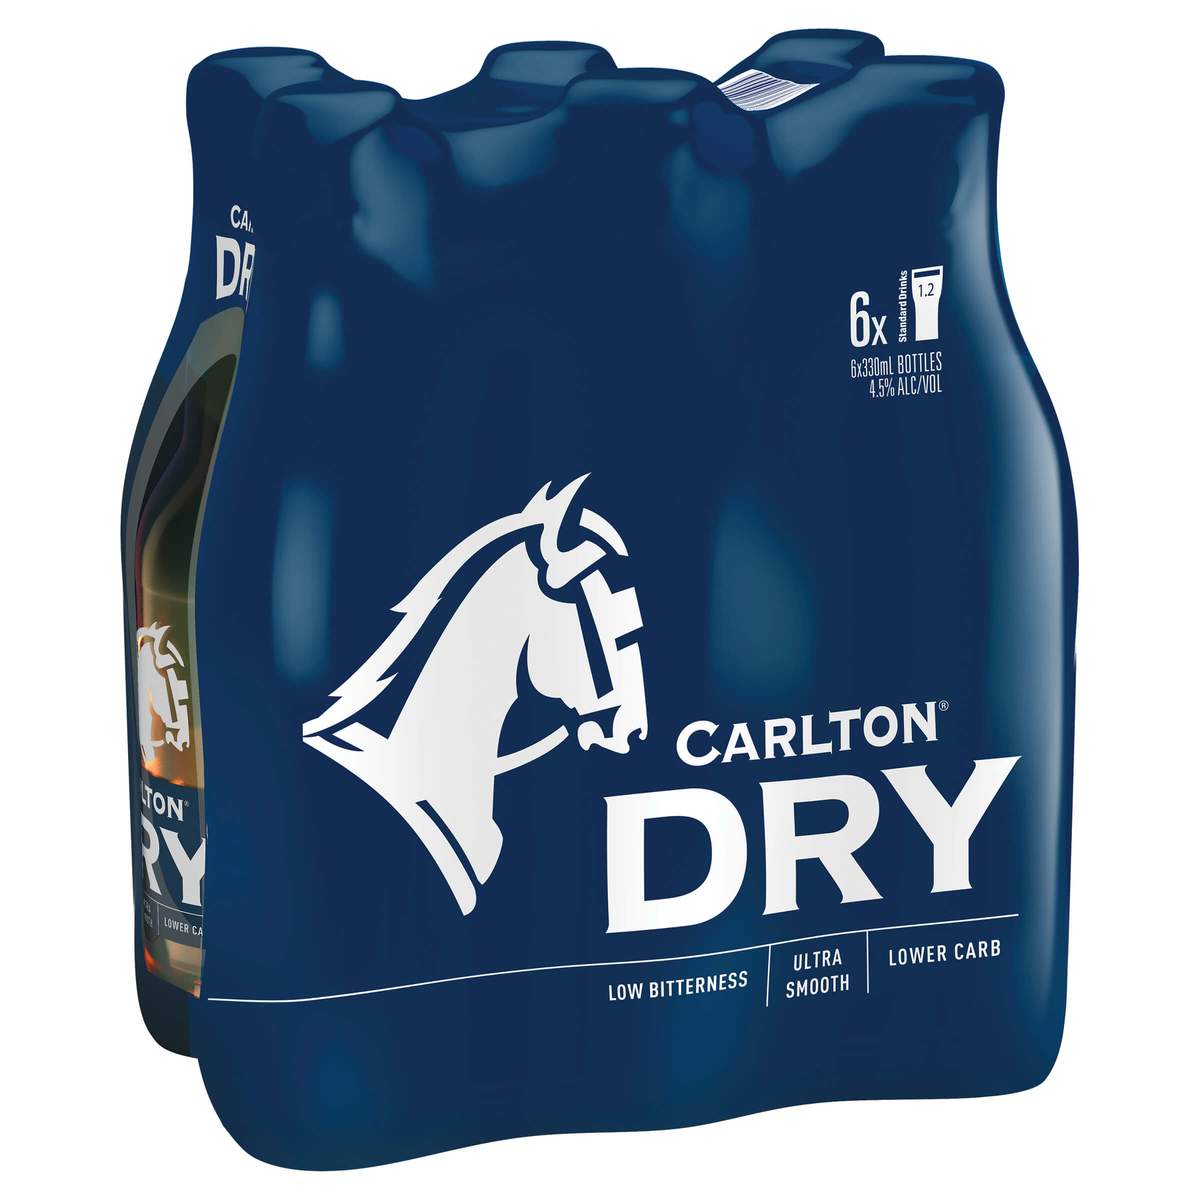 Carlton Dry Bottles 330mL (6 Bottle Pack)